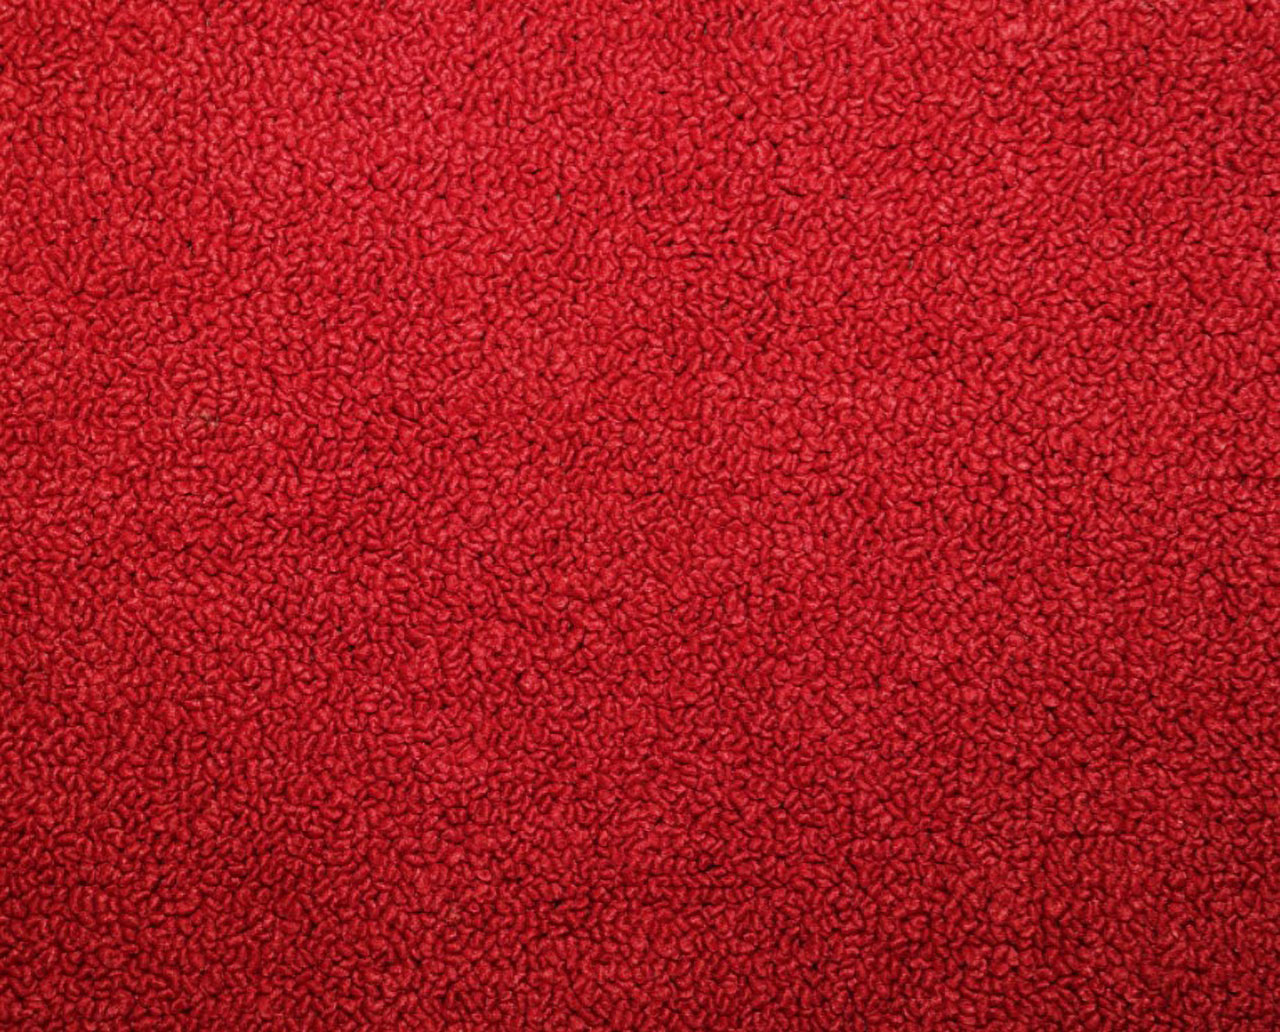 Holden Standard HD Standard Ute E25 Mephisto Red Carpet (Image 1 of 1)